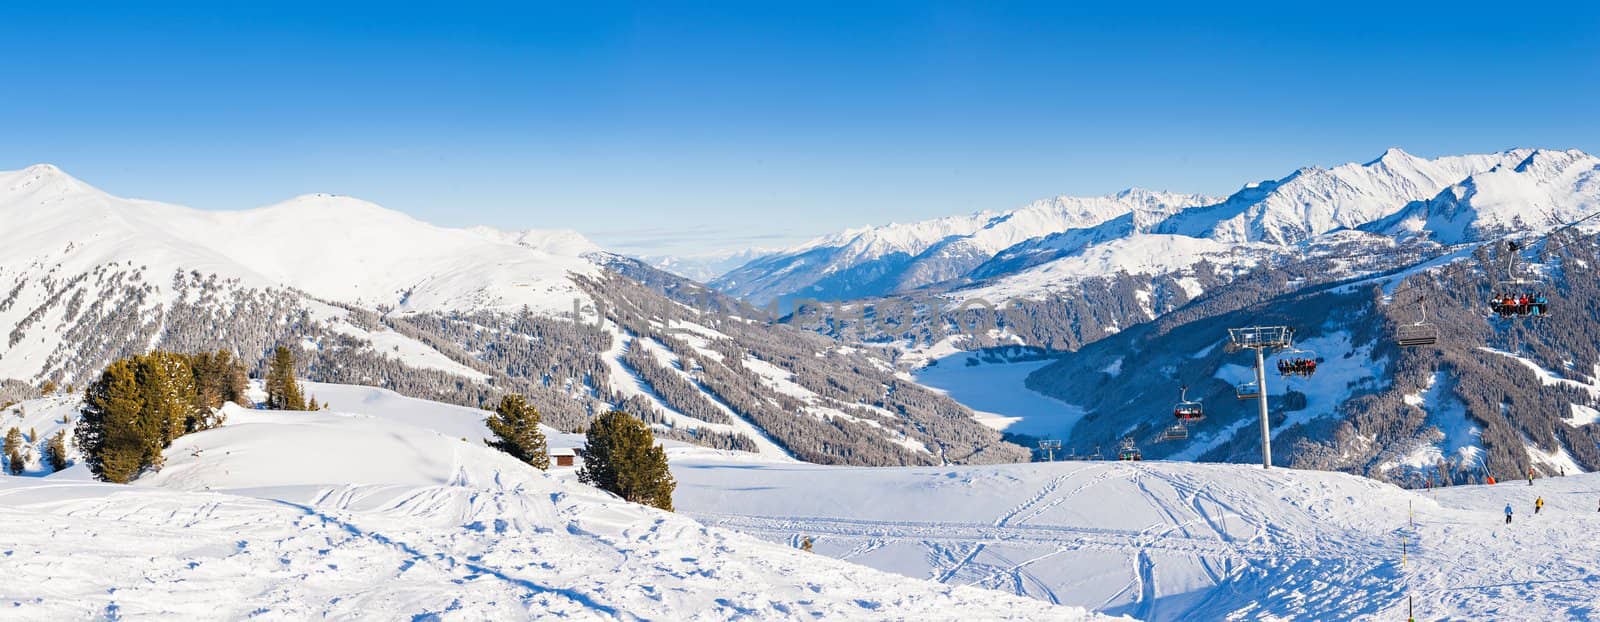 Ski resort. Austria by maxoliki